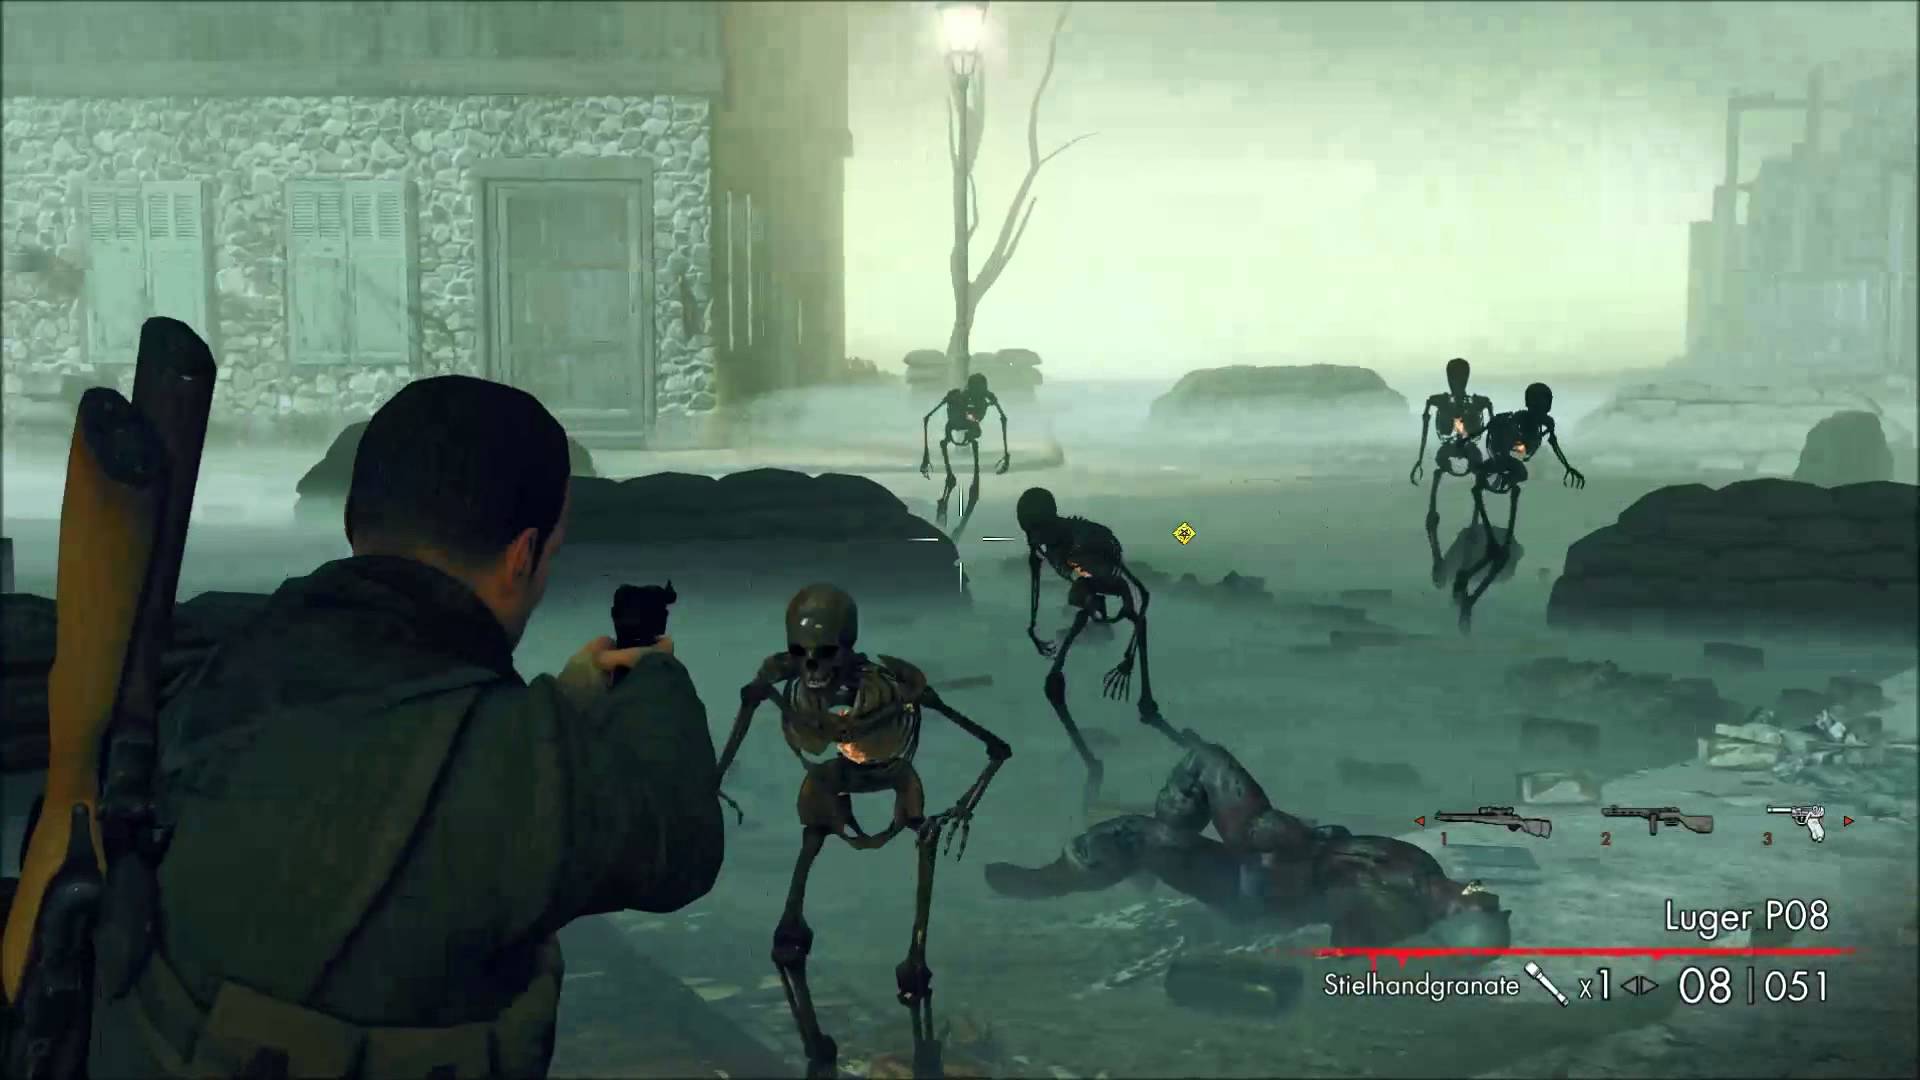 sniper elite 3 zombie